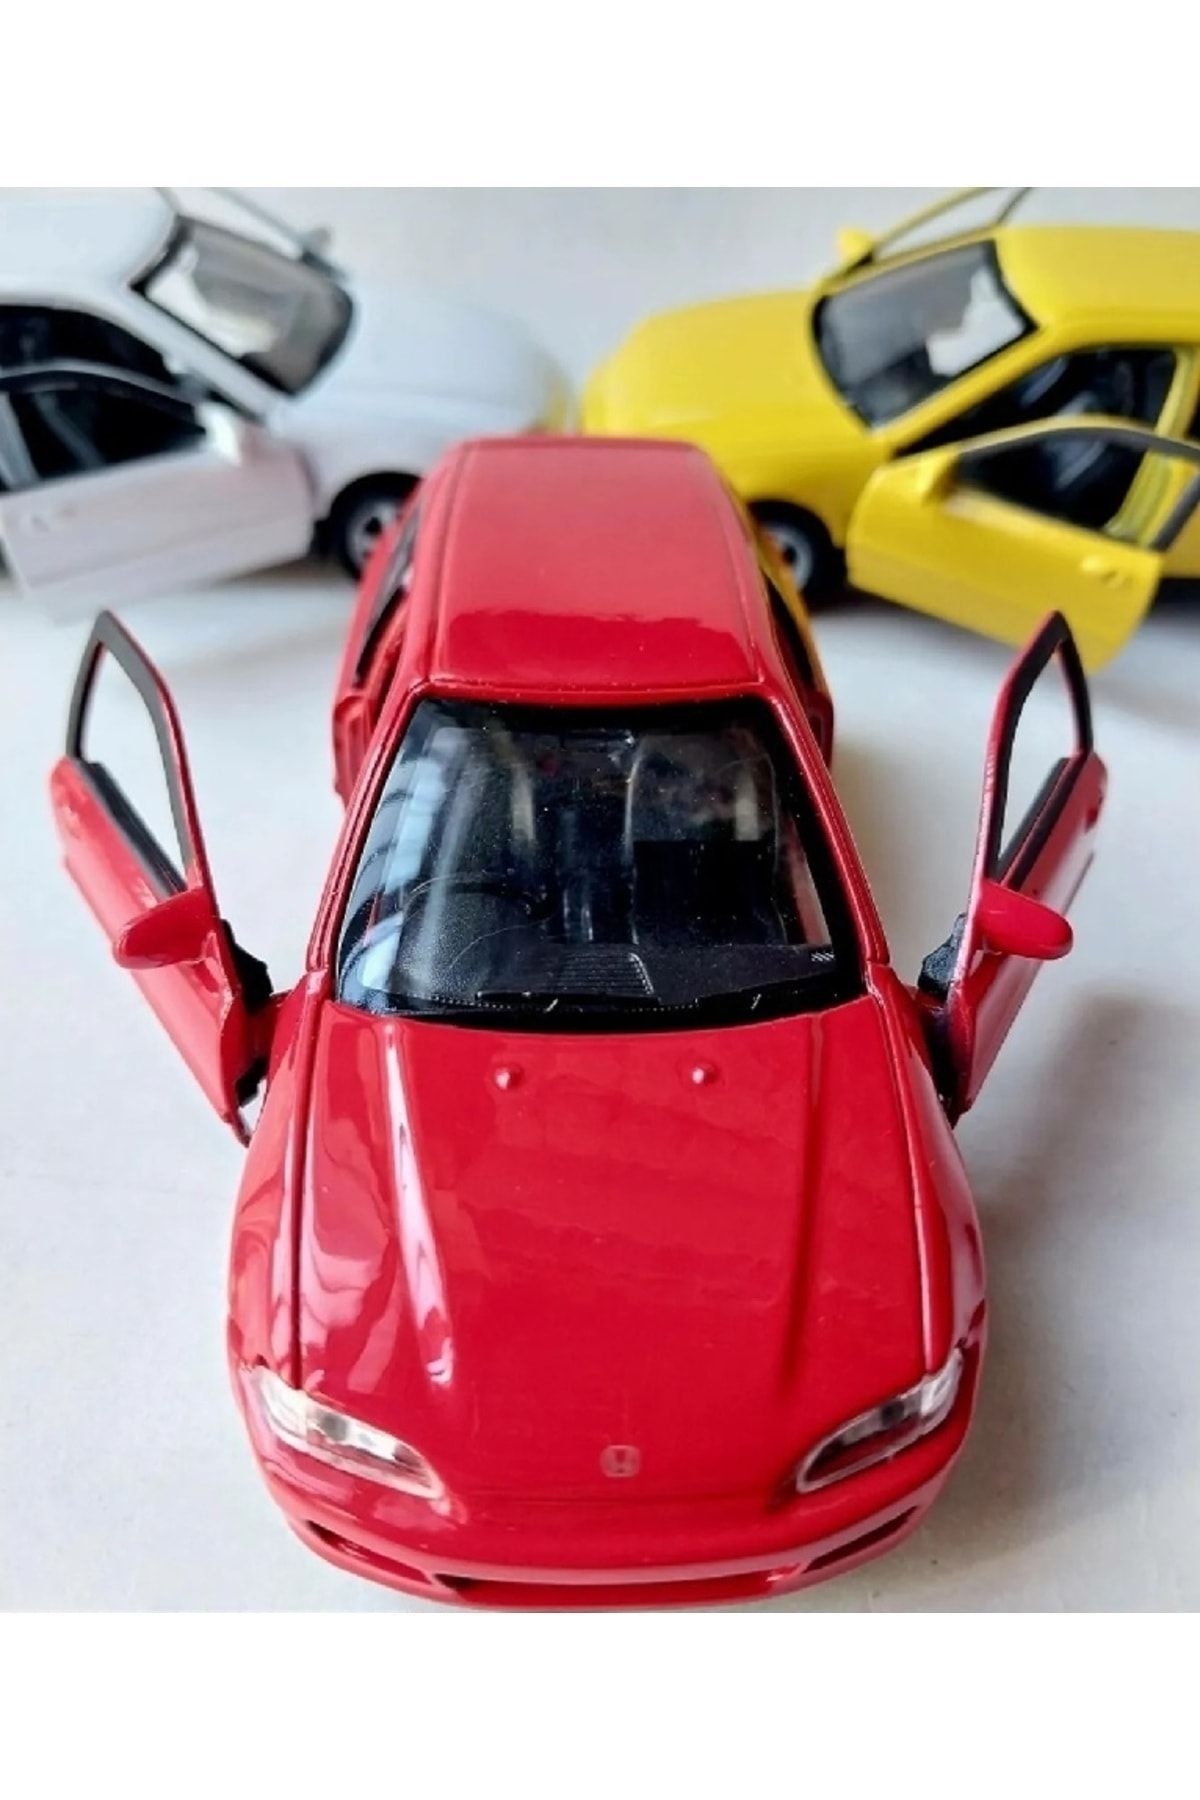 ALYTOYS Honda Cıvıc Efsane Kasa Diecast Metal Collectıon Çekbırak Araba Kapı Açılır Red